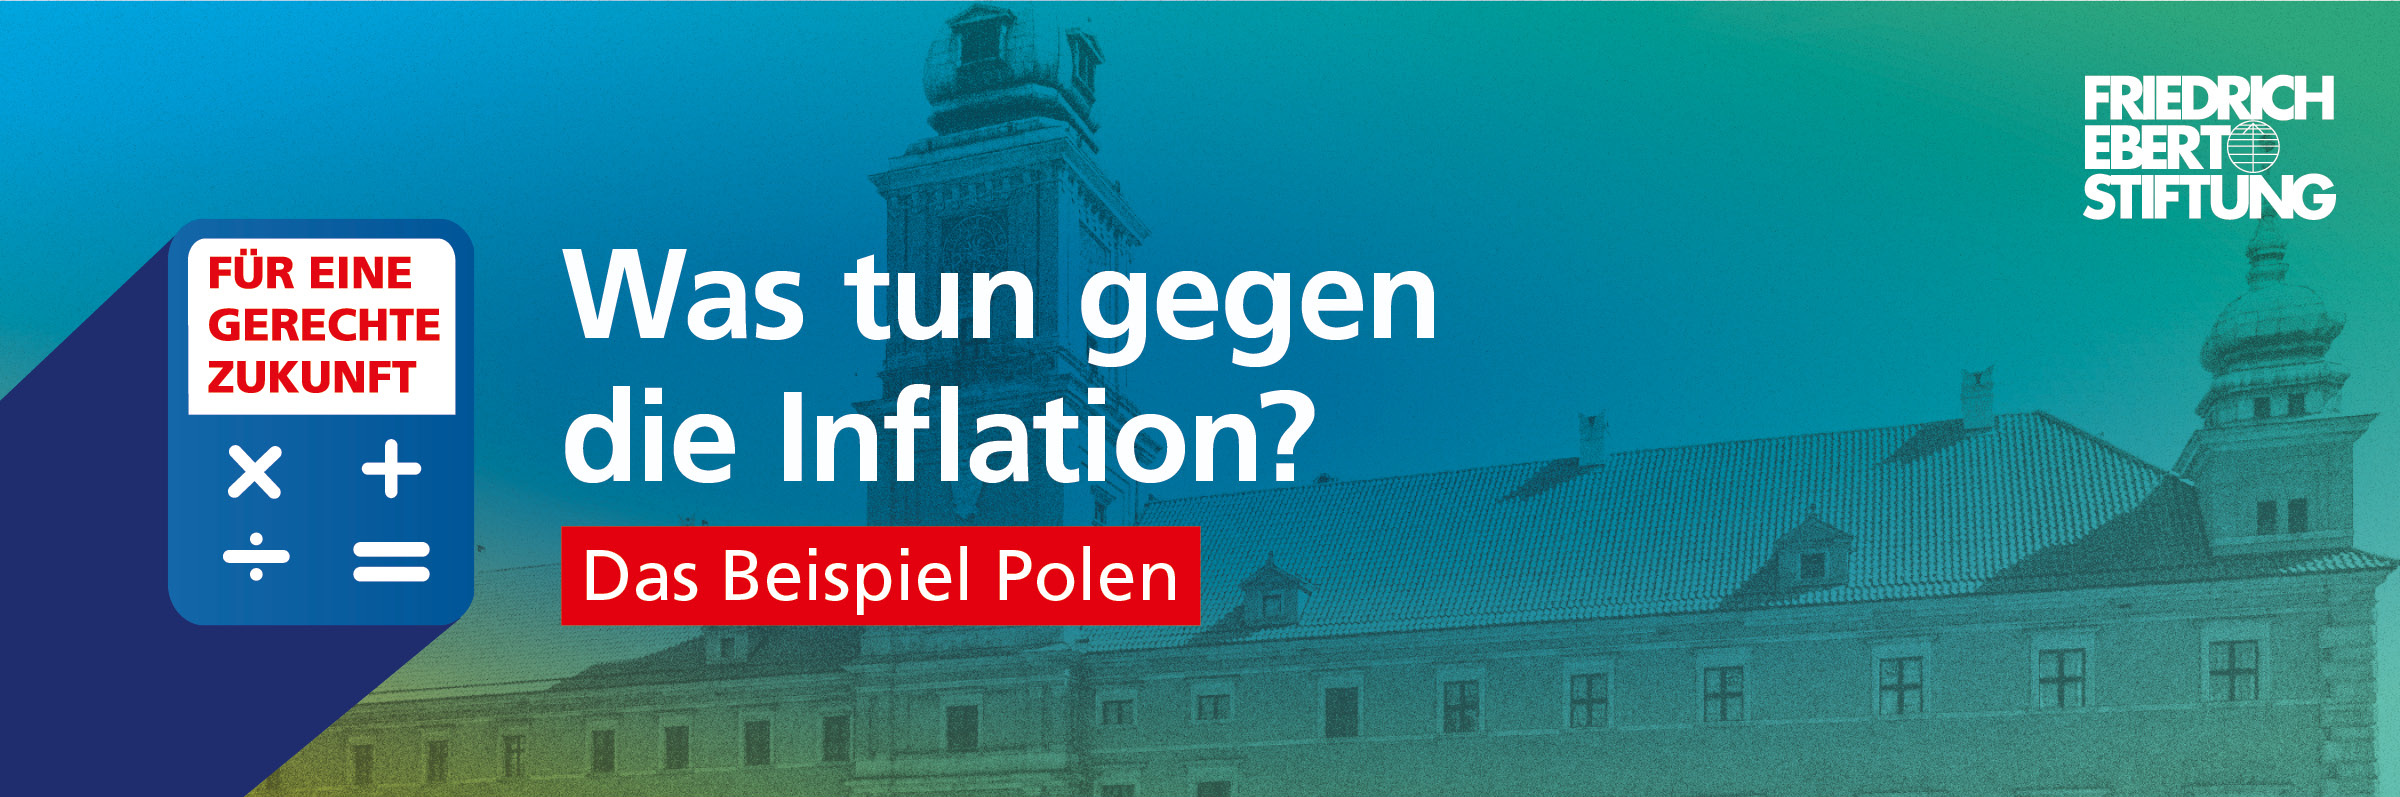 Blau-grün-gelb verwischter Hintergrund. Darauf der weiße Schriftzug "Was tun gegen die Inflation? Das Beispiel Polen".